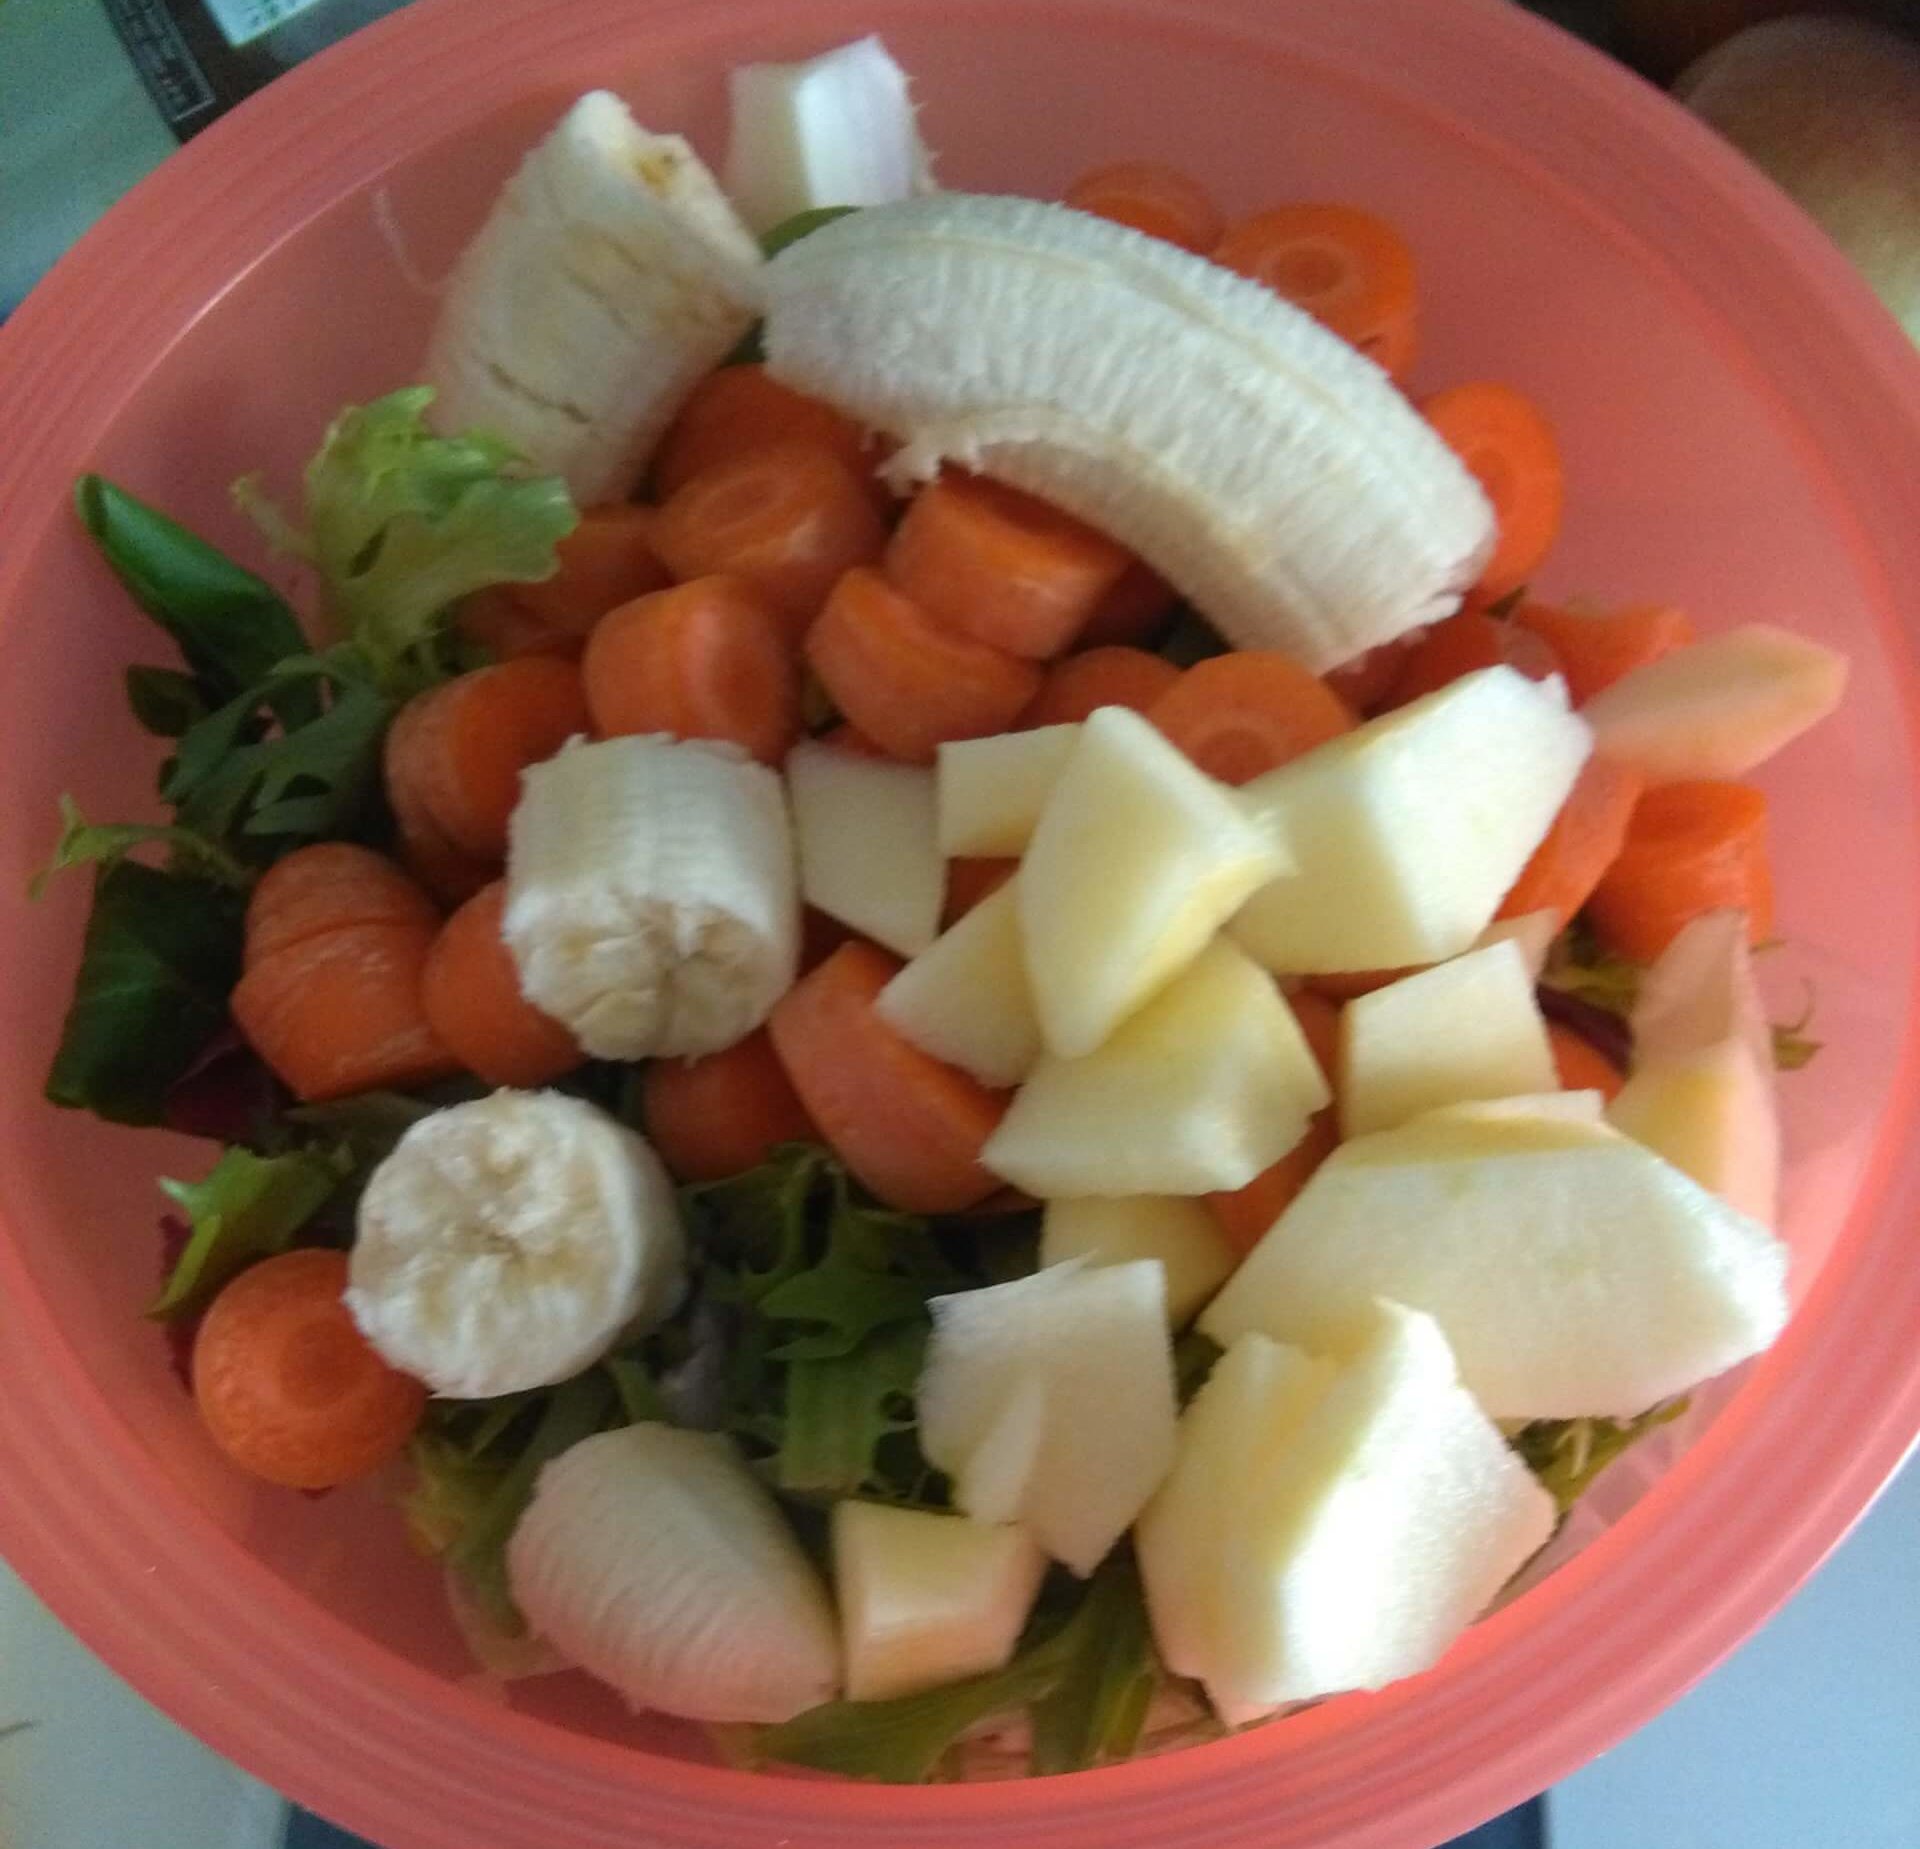 Schüssel mit kleingeschnittenem Obst und Gemüse